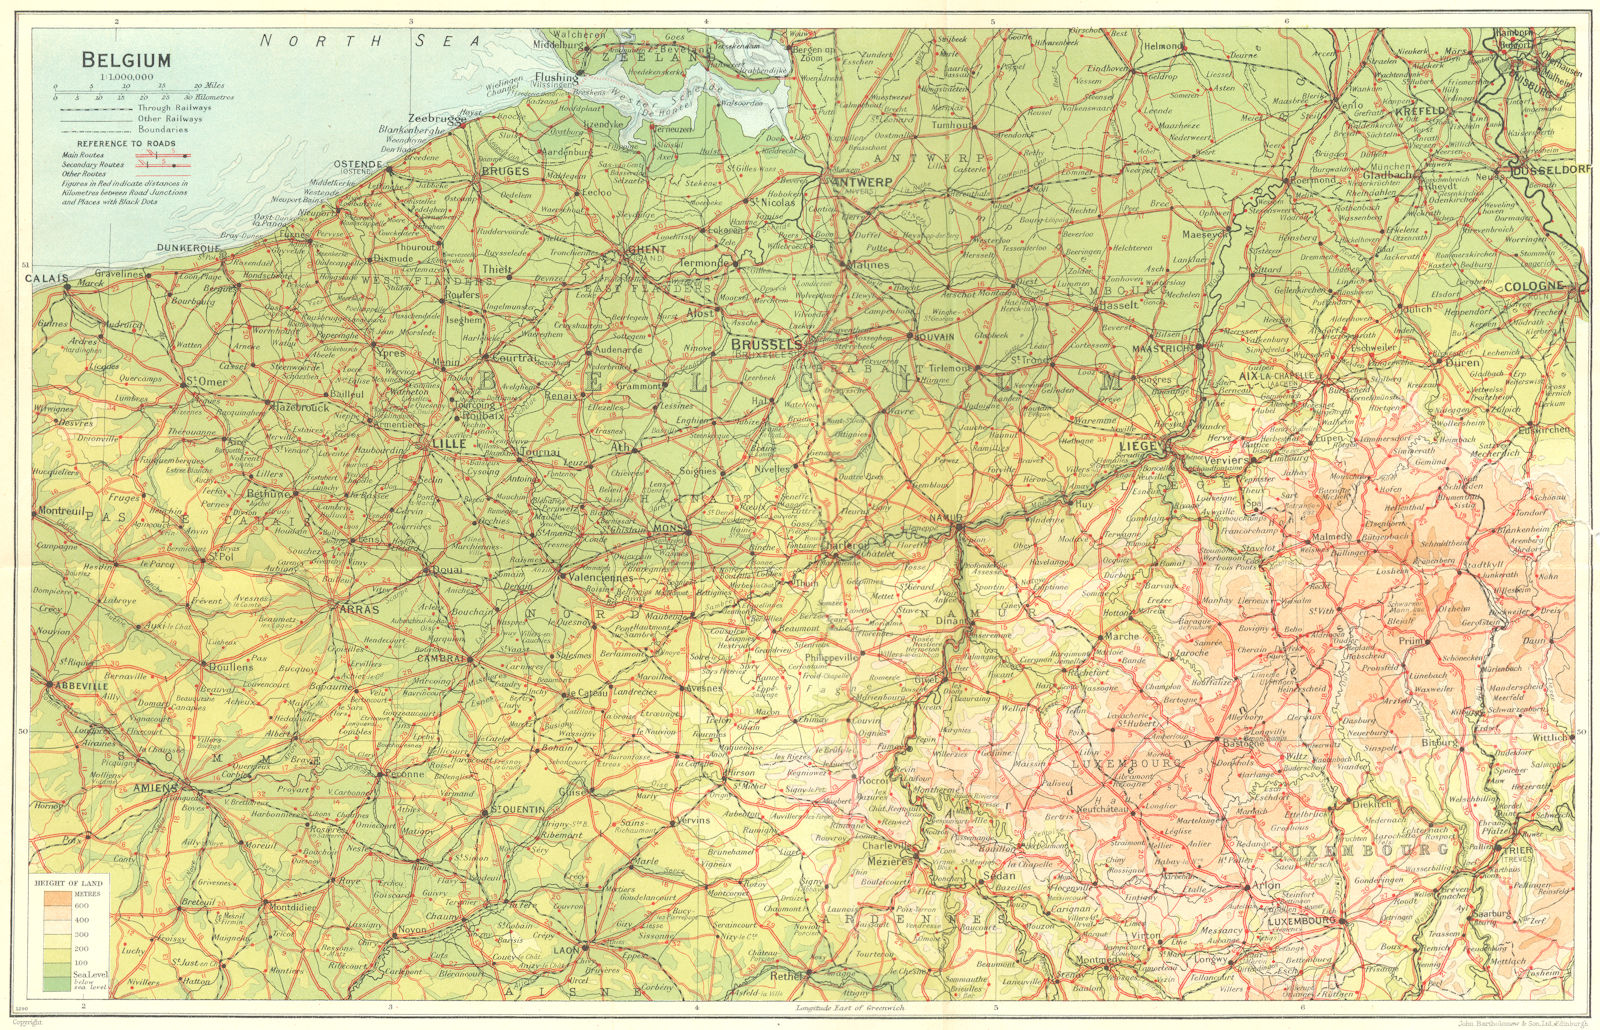 BELGIUM. Belgium 1929 old vintage map plan chart